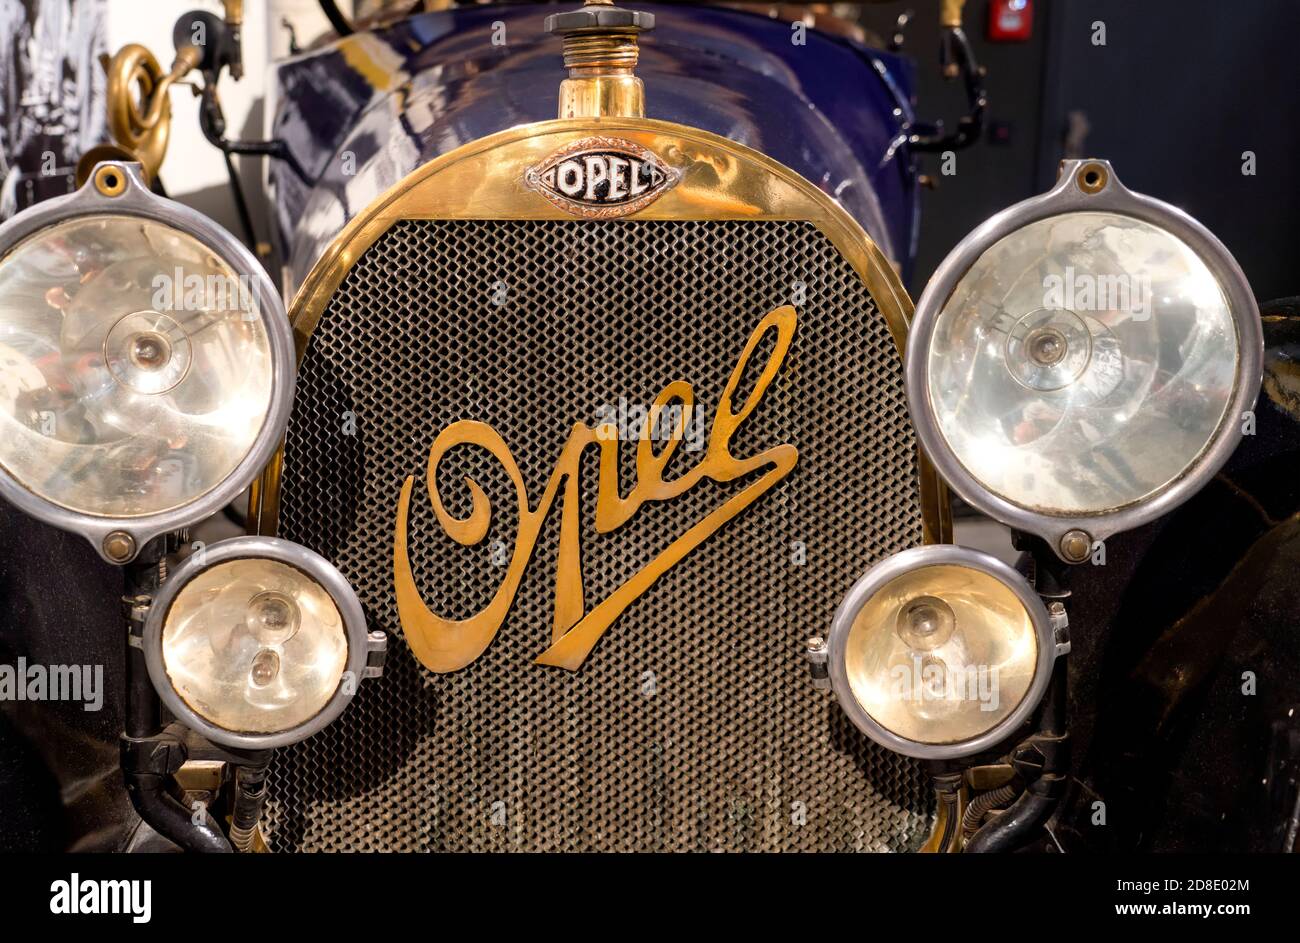 Opel Oldtimer, deutscher Automobilhersteller Opel, 1930er Jahre, PS.SPEICHER Museum, Einbeck, Niedersachsen, Deutschland, Europa Stockfoto